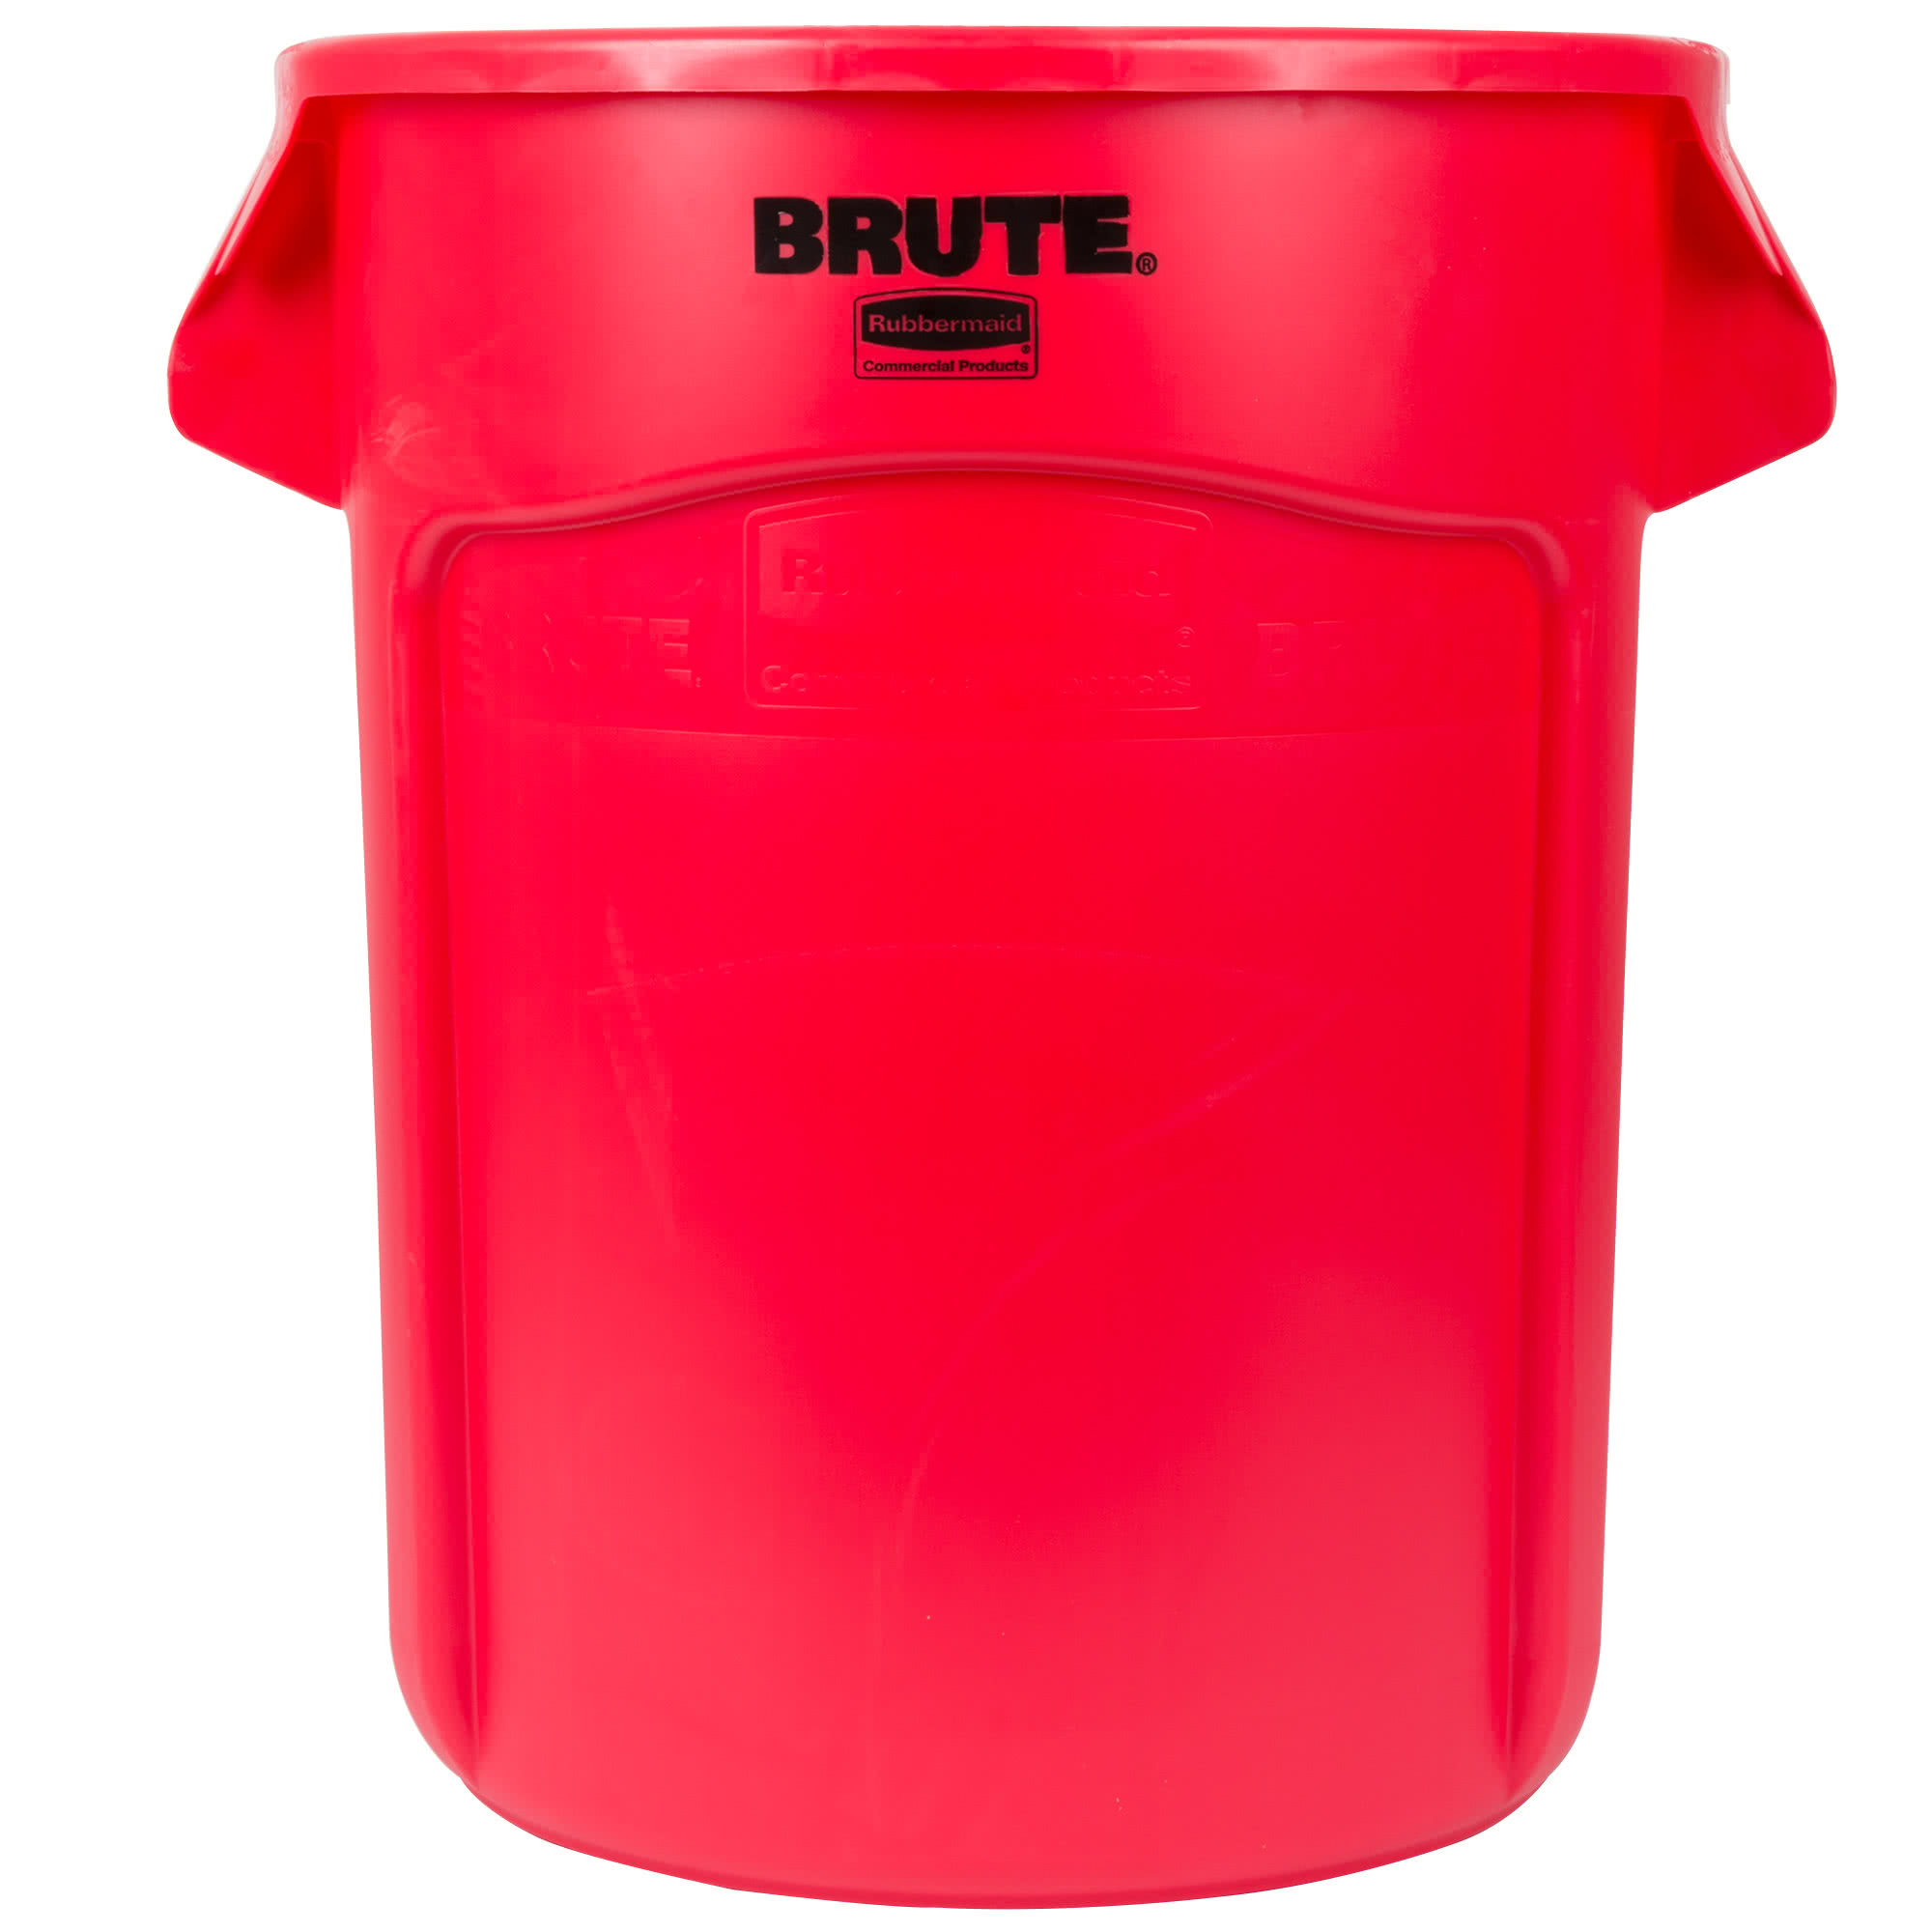 Rubbermaid FG262000RED contenedor Brute color rojo con capacidad para 20 galones